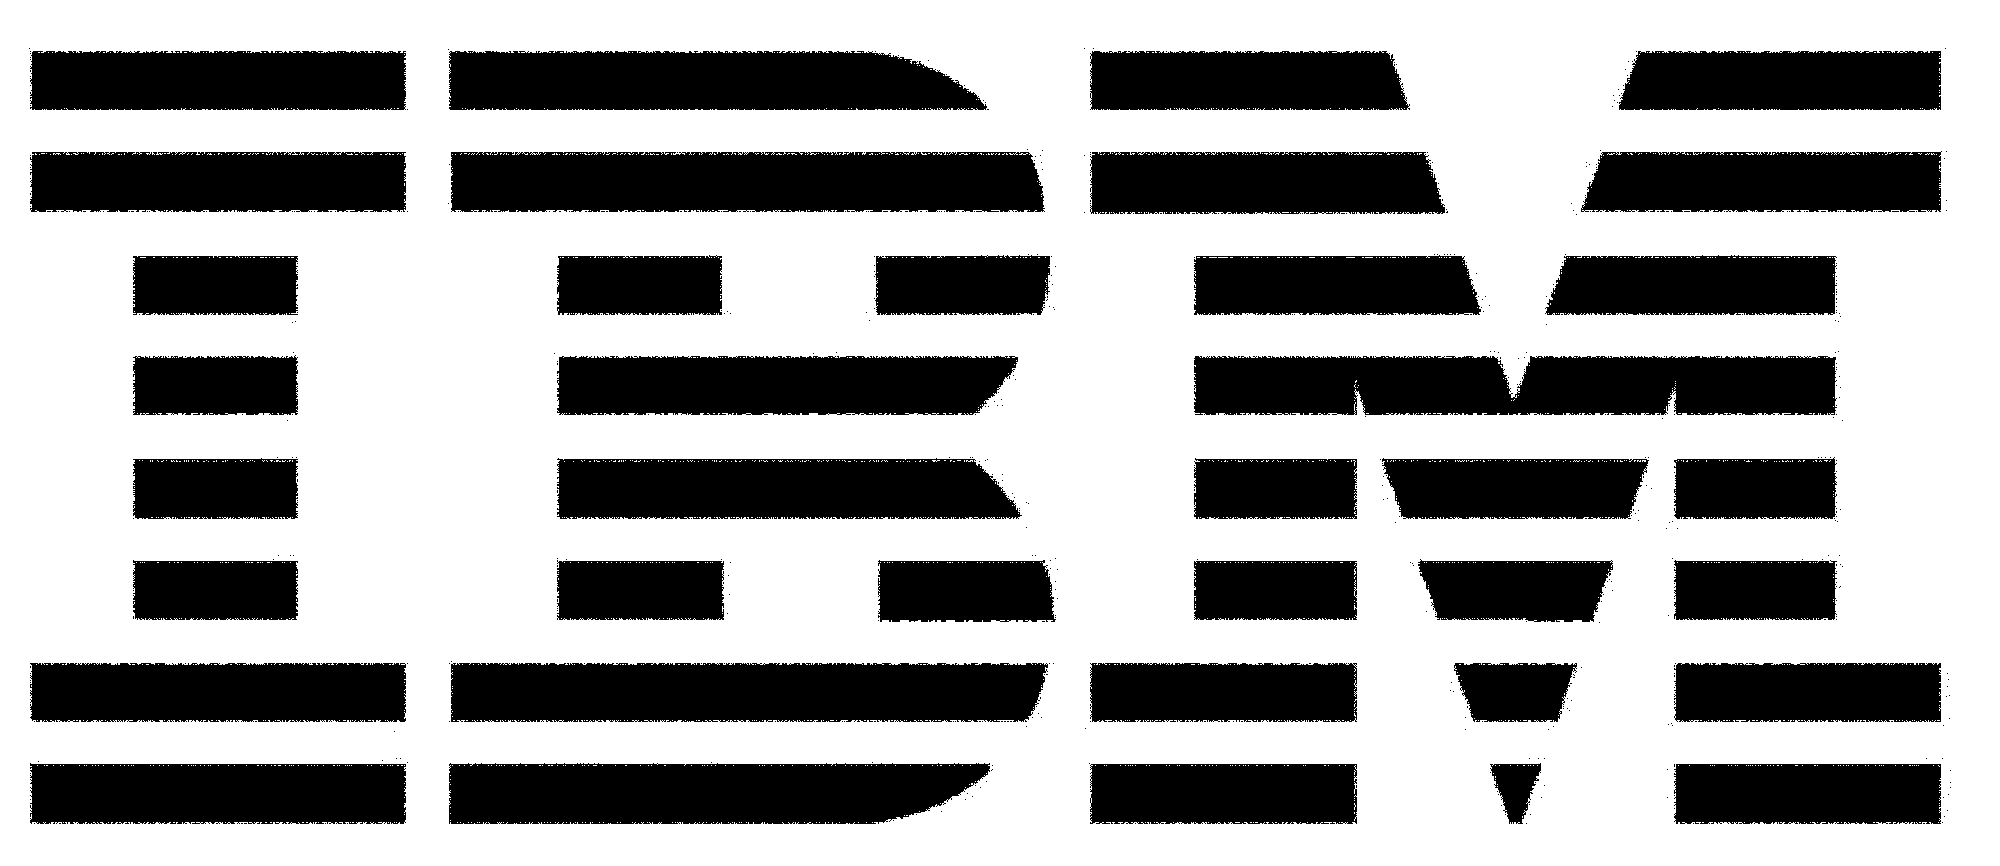 File:IBM logo 1967.png